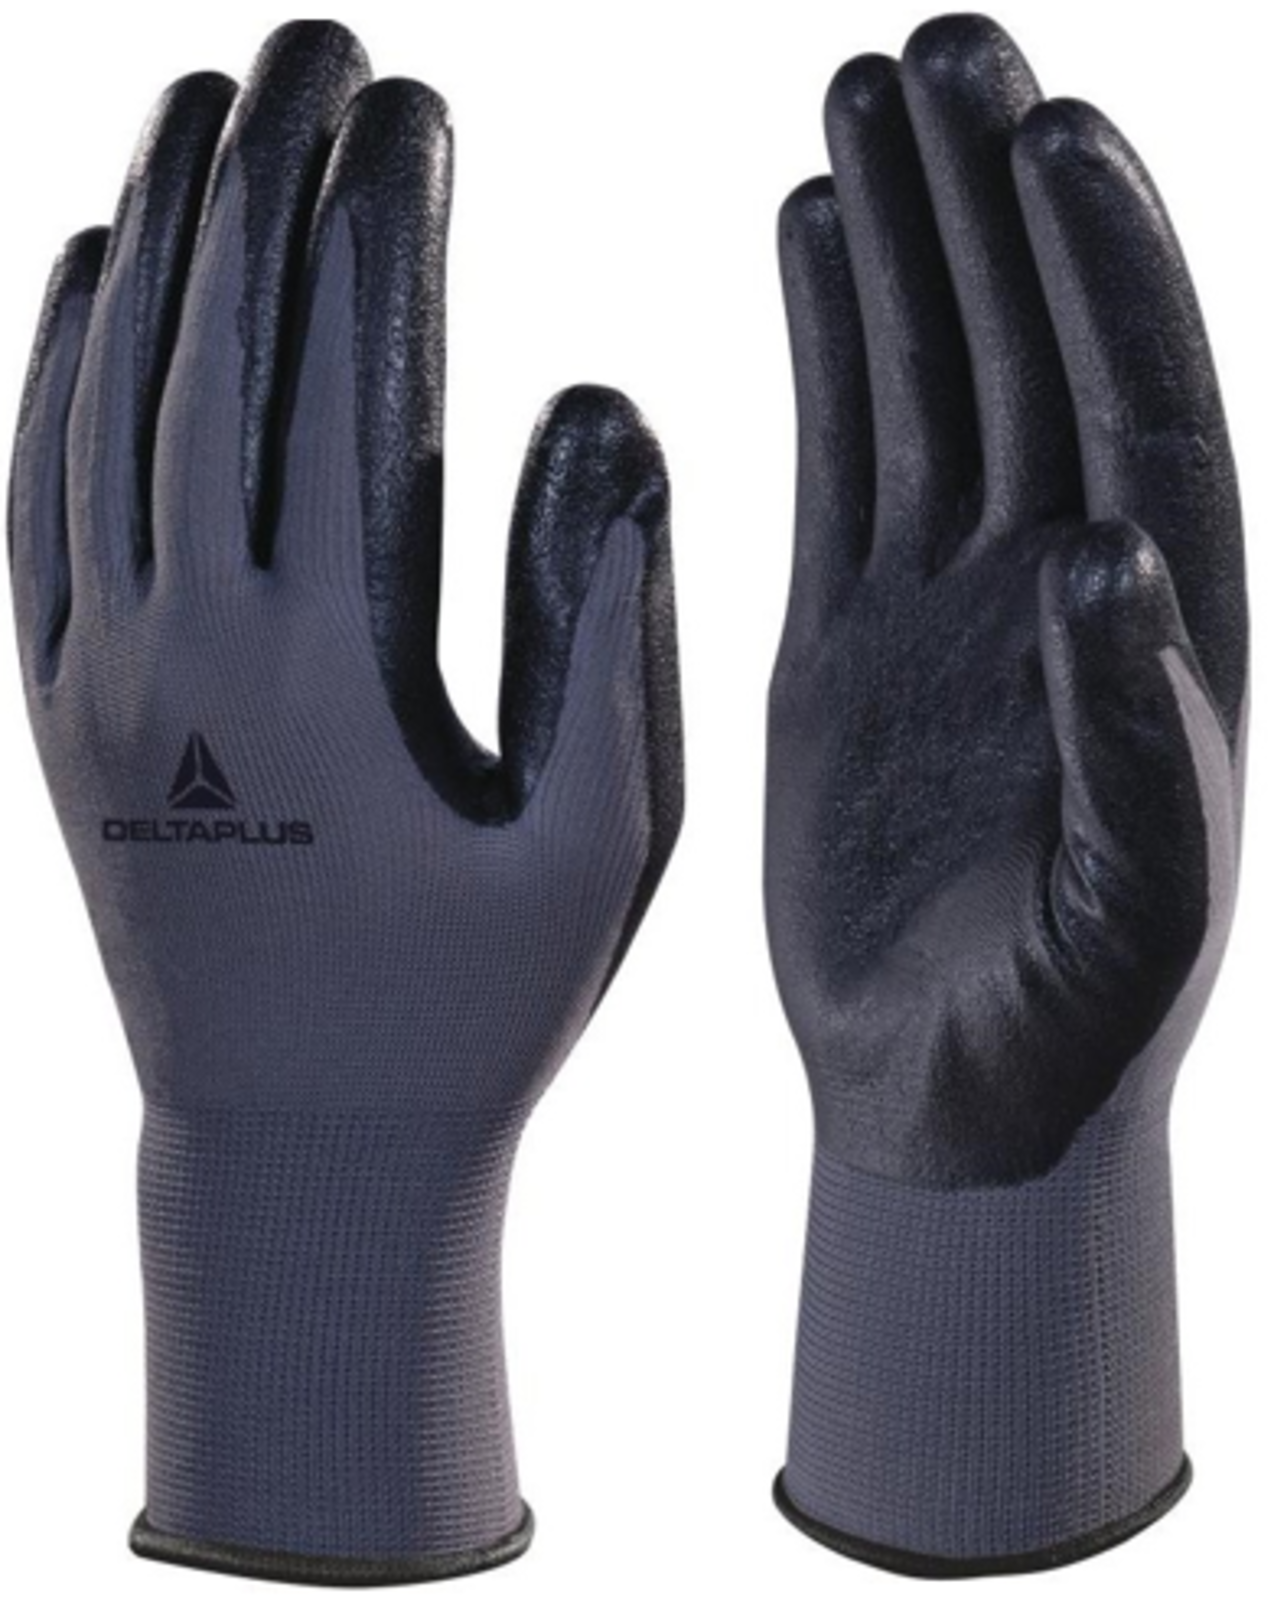 Nitrilové rukavice Delta Plus VE722 - veľkosť: 10/XL, farba: sivá/čierna